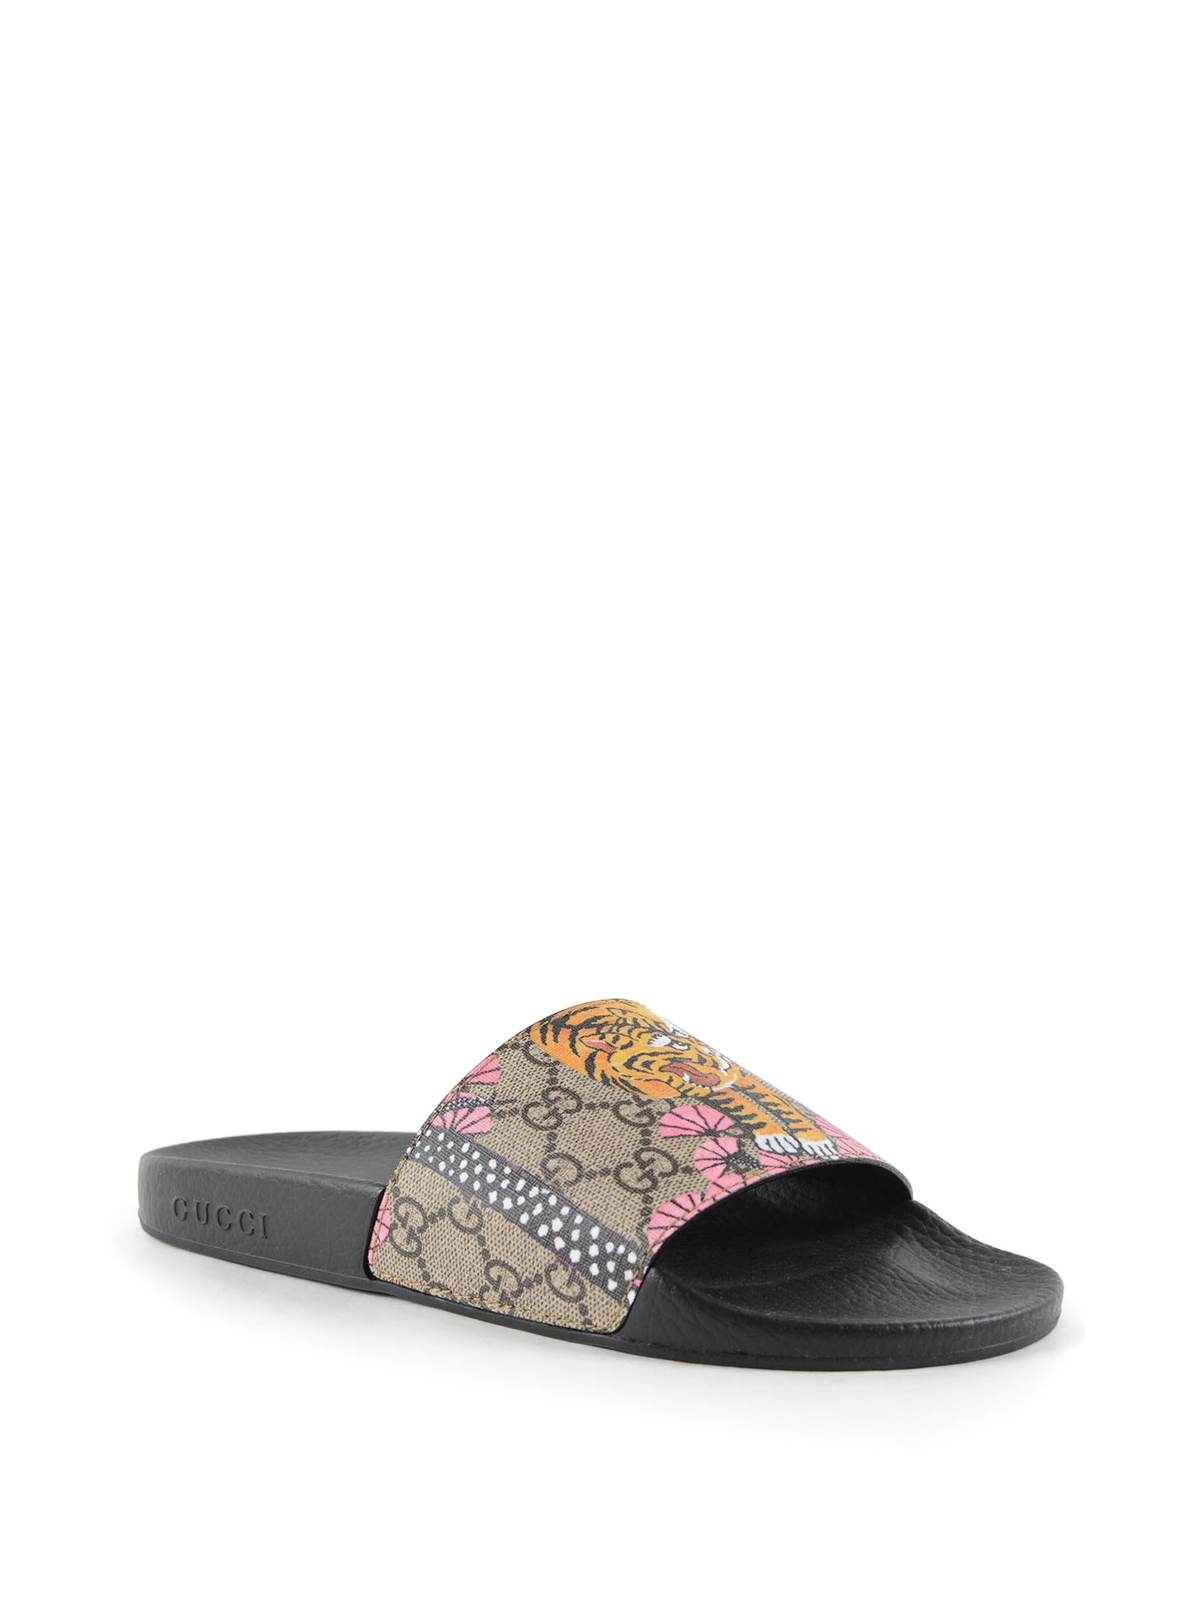 Sandals Gucci - Gucci Bengal print rubber sandals - 408508K6D009939